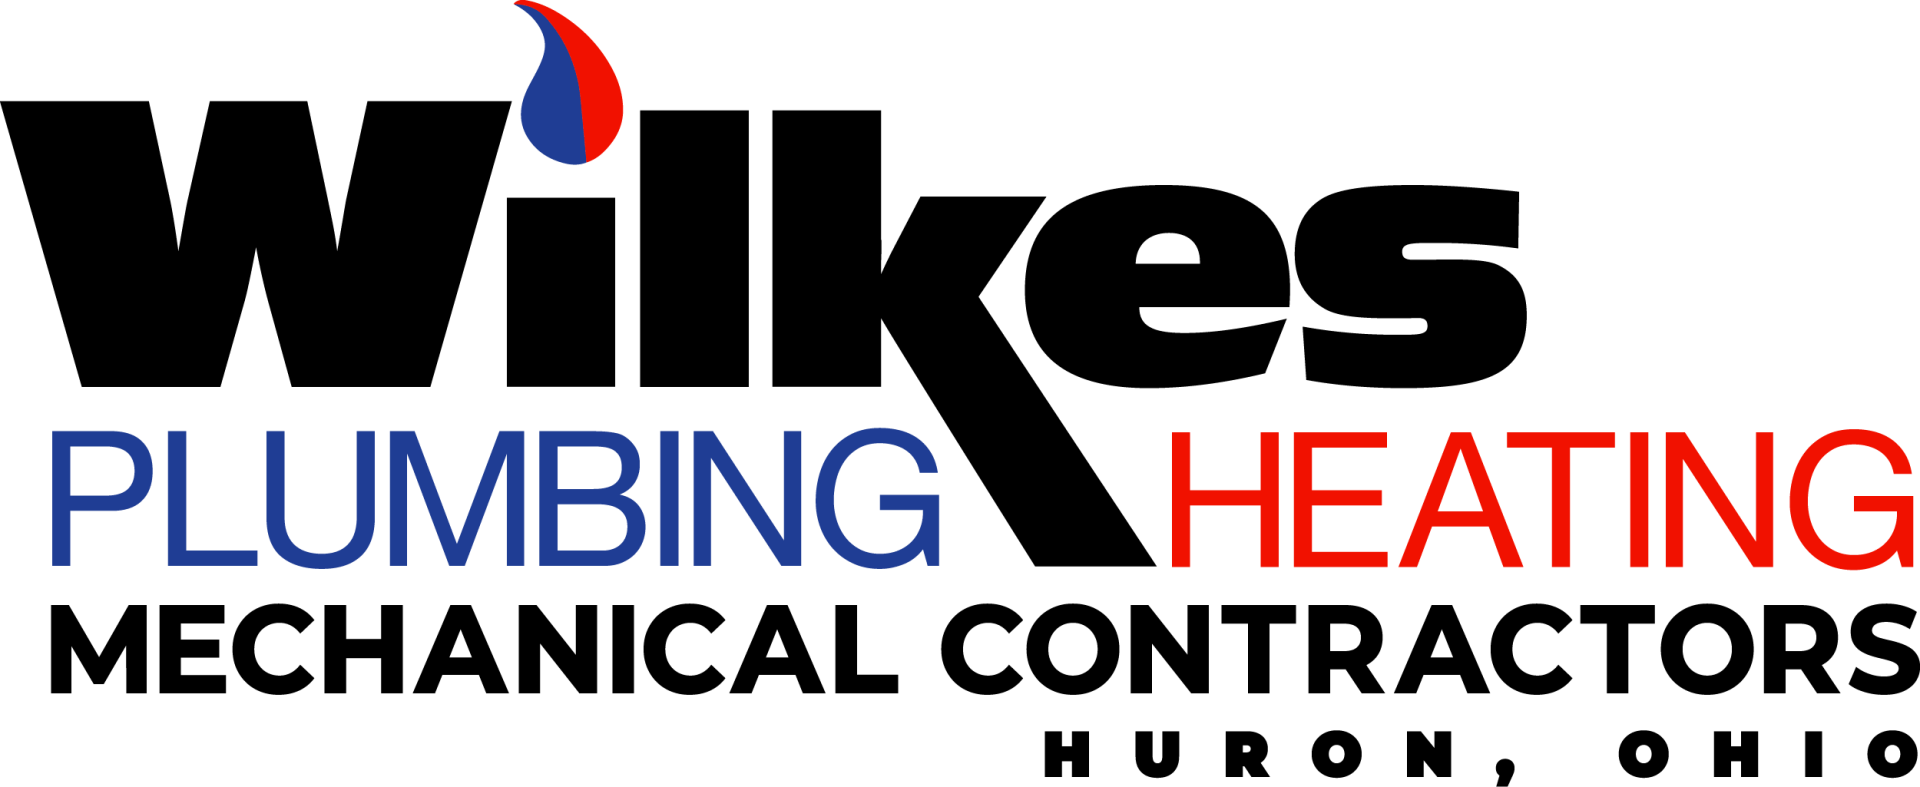 Wilkes Plumbing Heating Mechanical Contractors